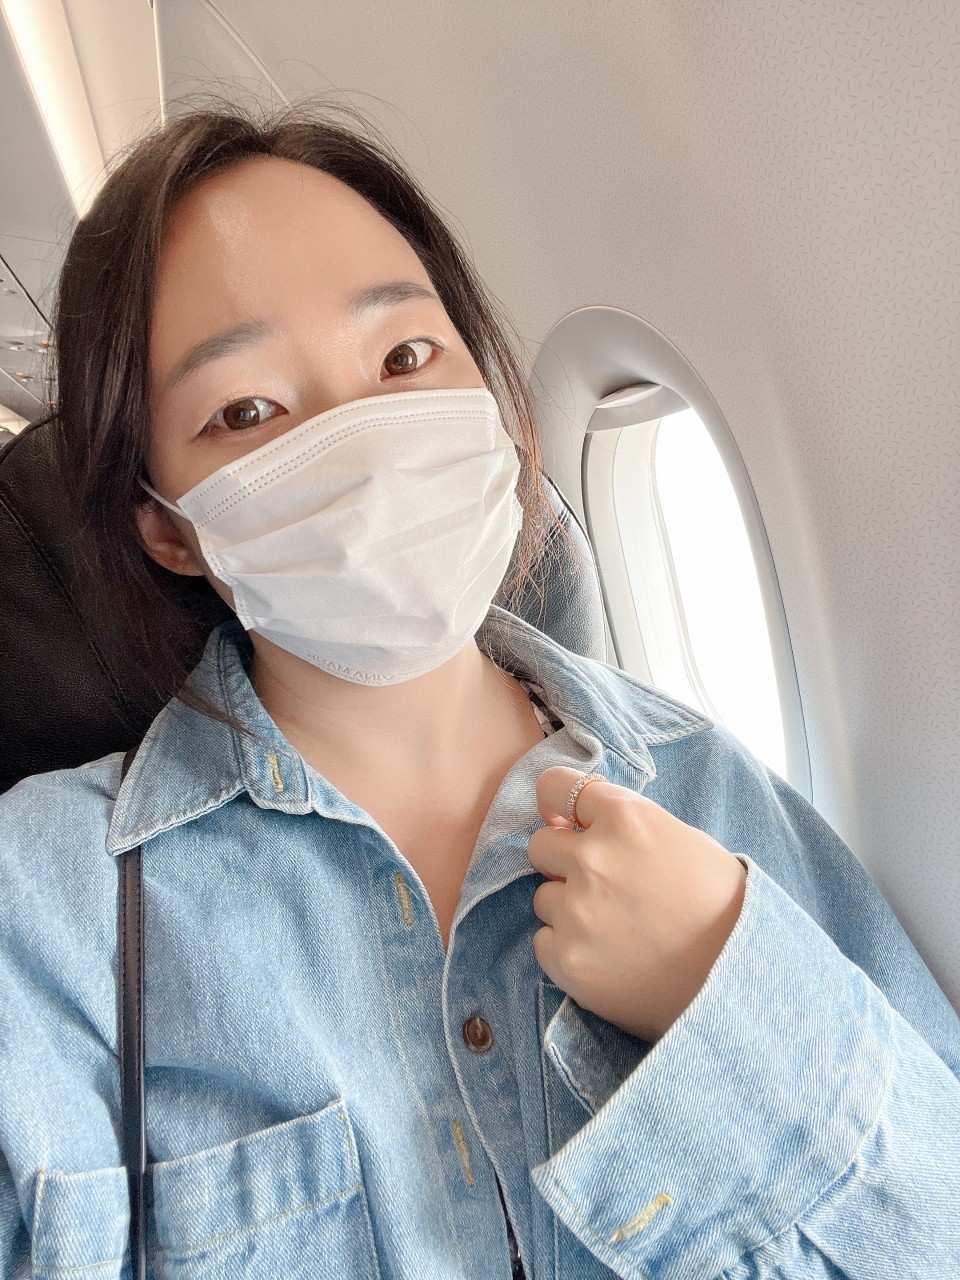 베트남 나트랑 자유여행 : 항공권, 숙소, 나트랑 가볼만한곳